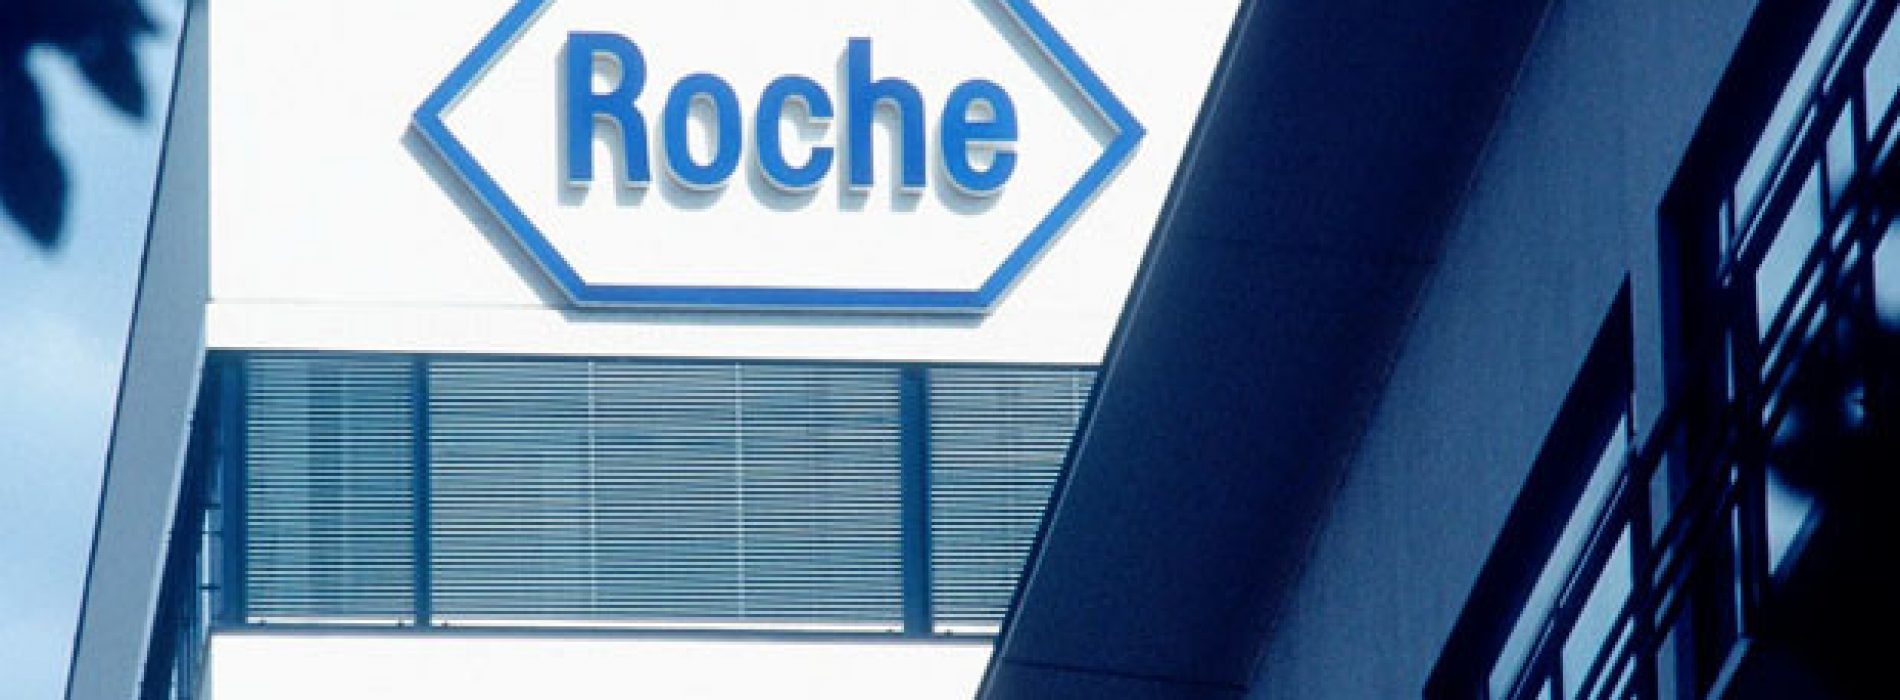 Medicijngigant Roche verzwijgt 15.000 sterfgevallen